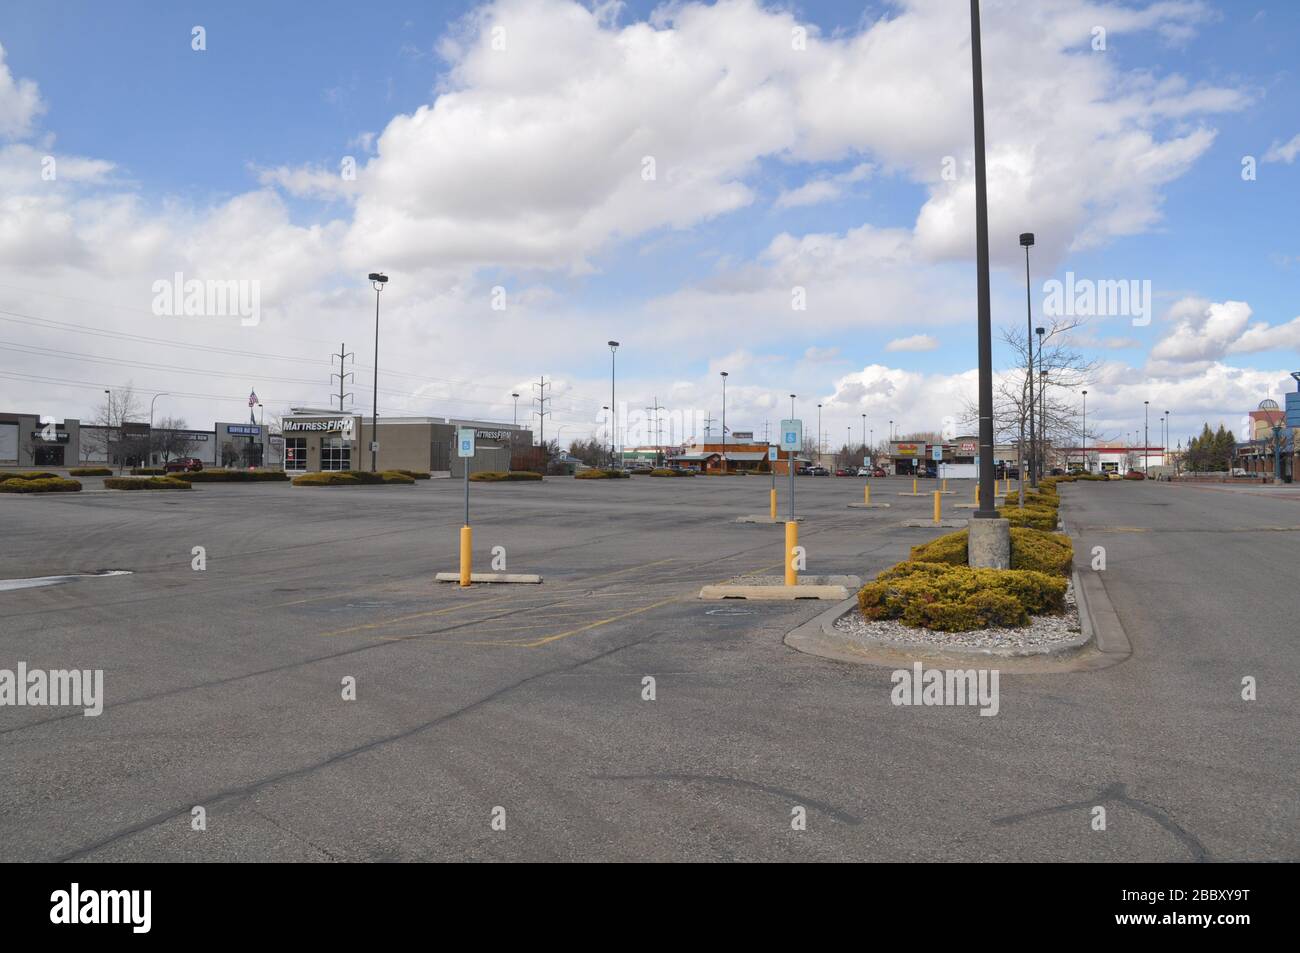 covid-19 plazas de aparcamiento de compras vacías Foto de stock